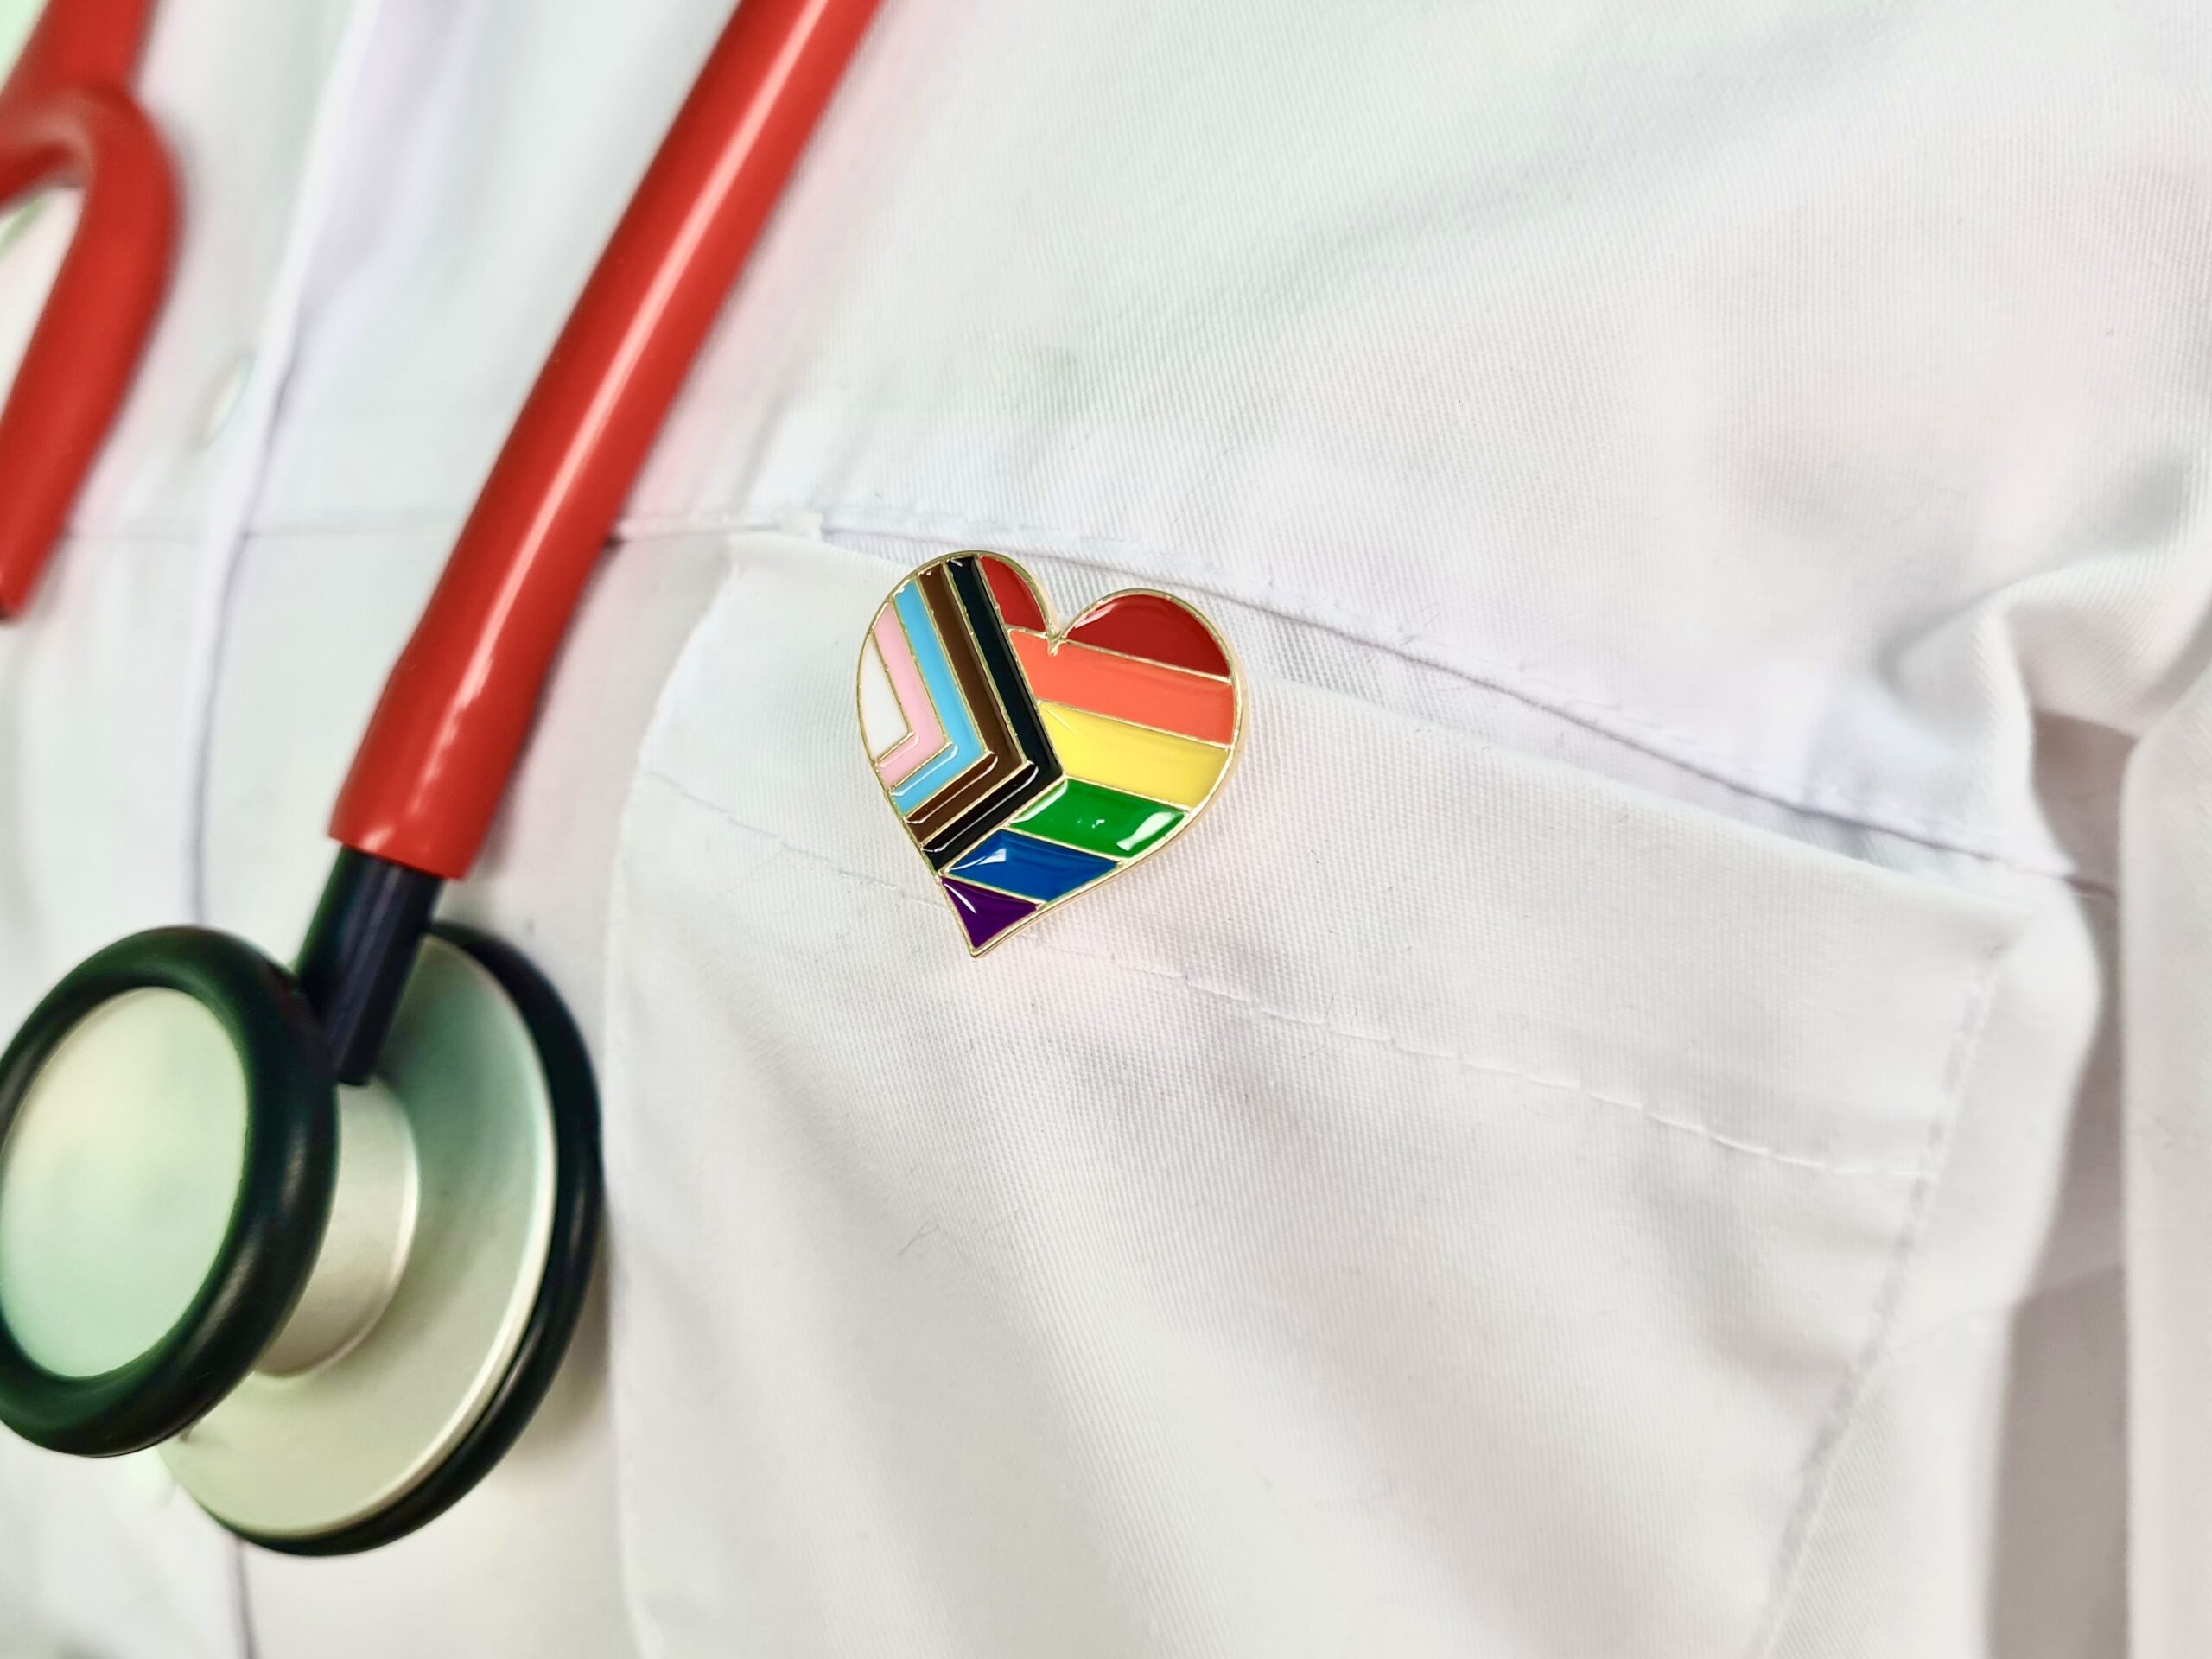 LGBTQIA+ Pin on doctors jacket